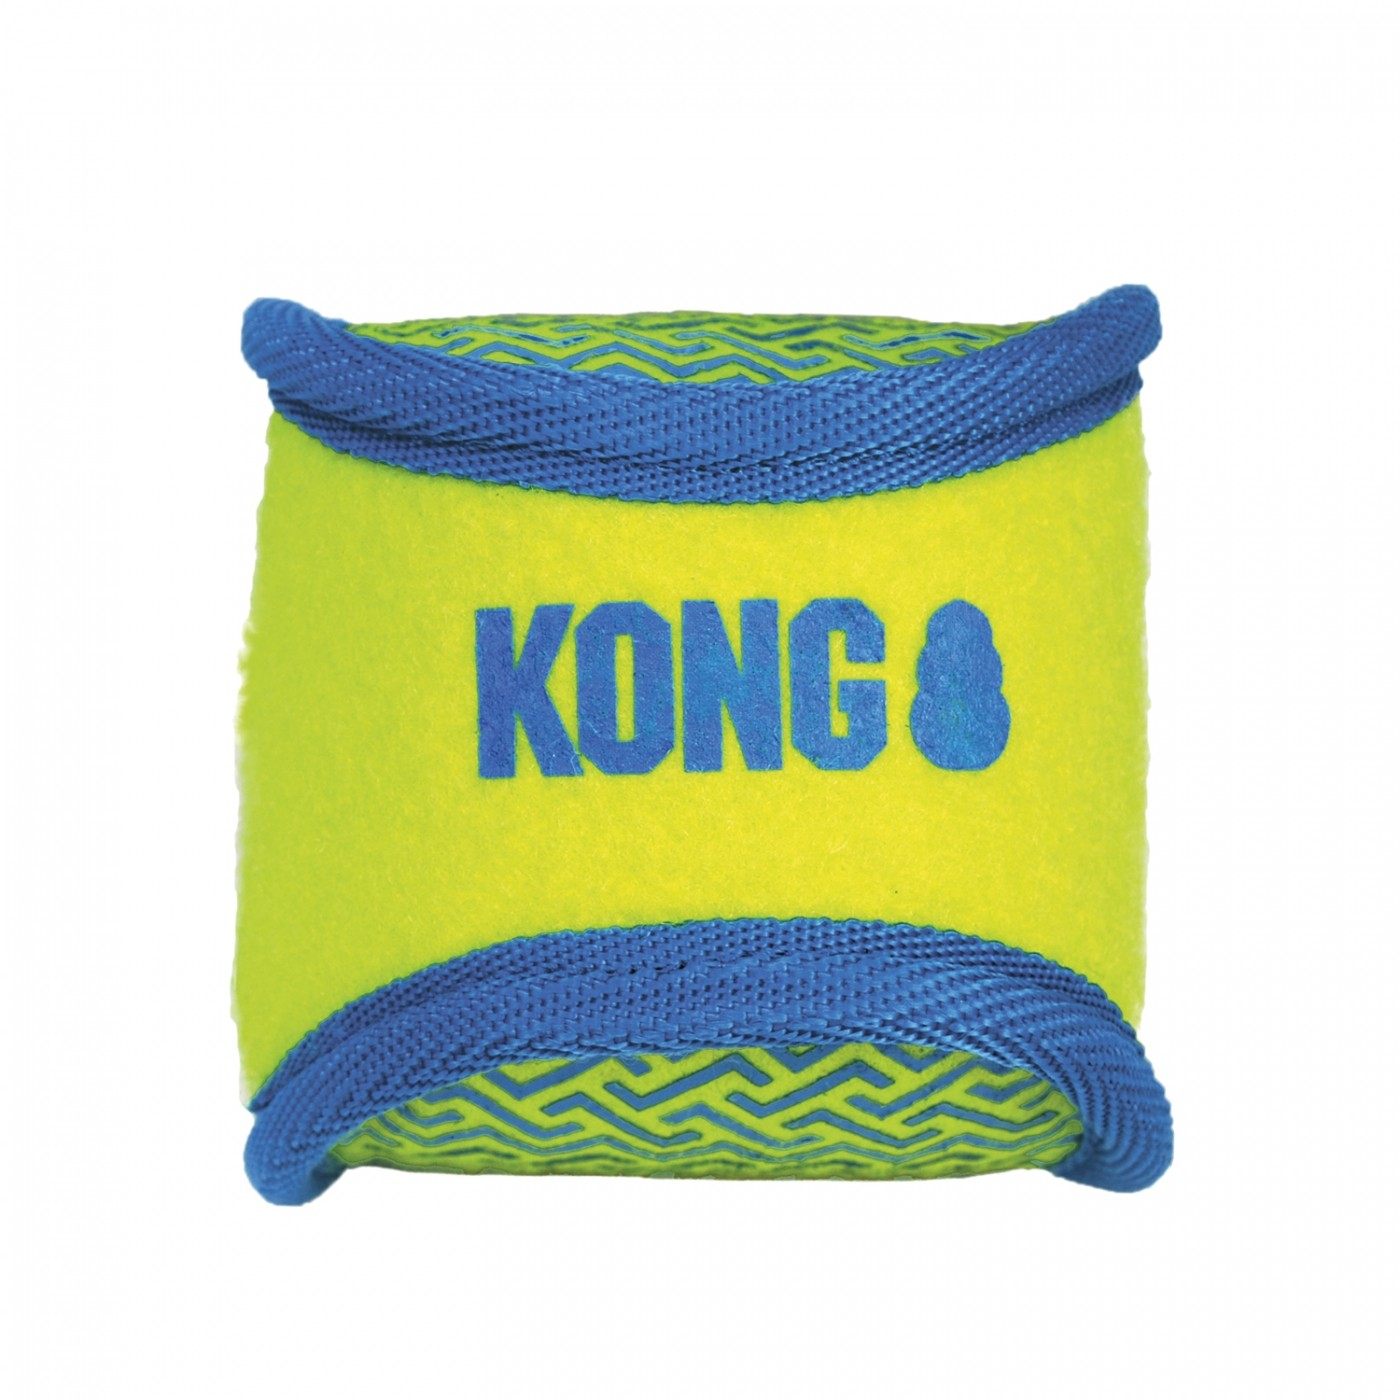 Pelota para perro KONG Impact Balls - 2 tallas disponibles